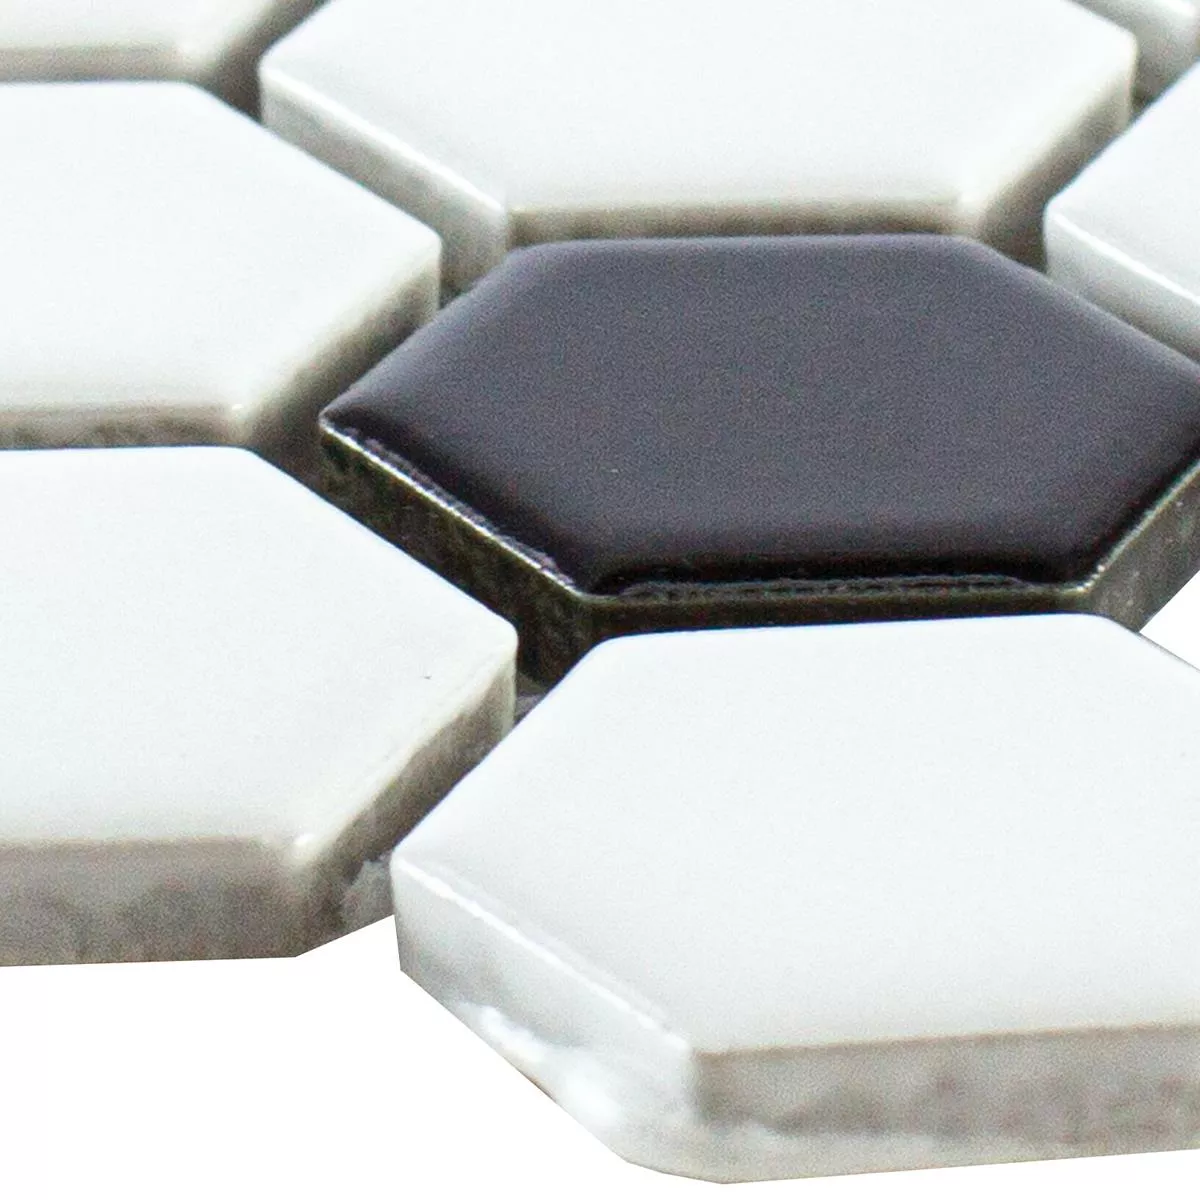 Sample Ceramic Mosaic Tile Gosford Black Blanc